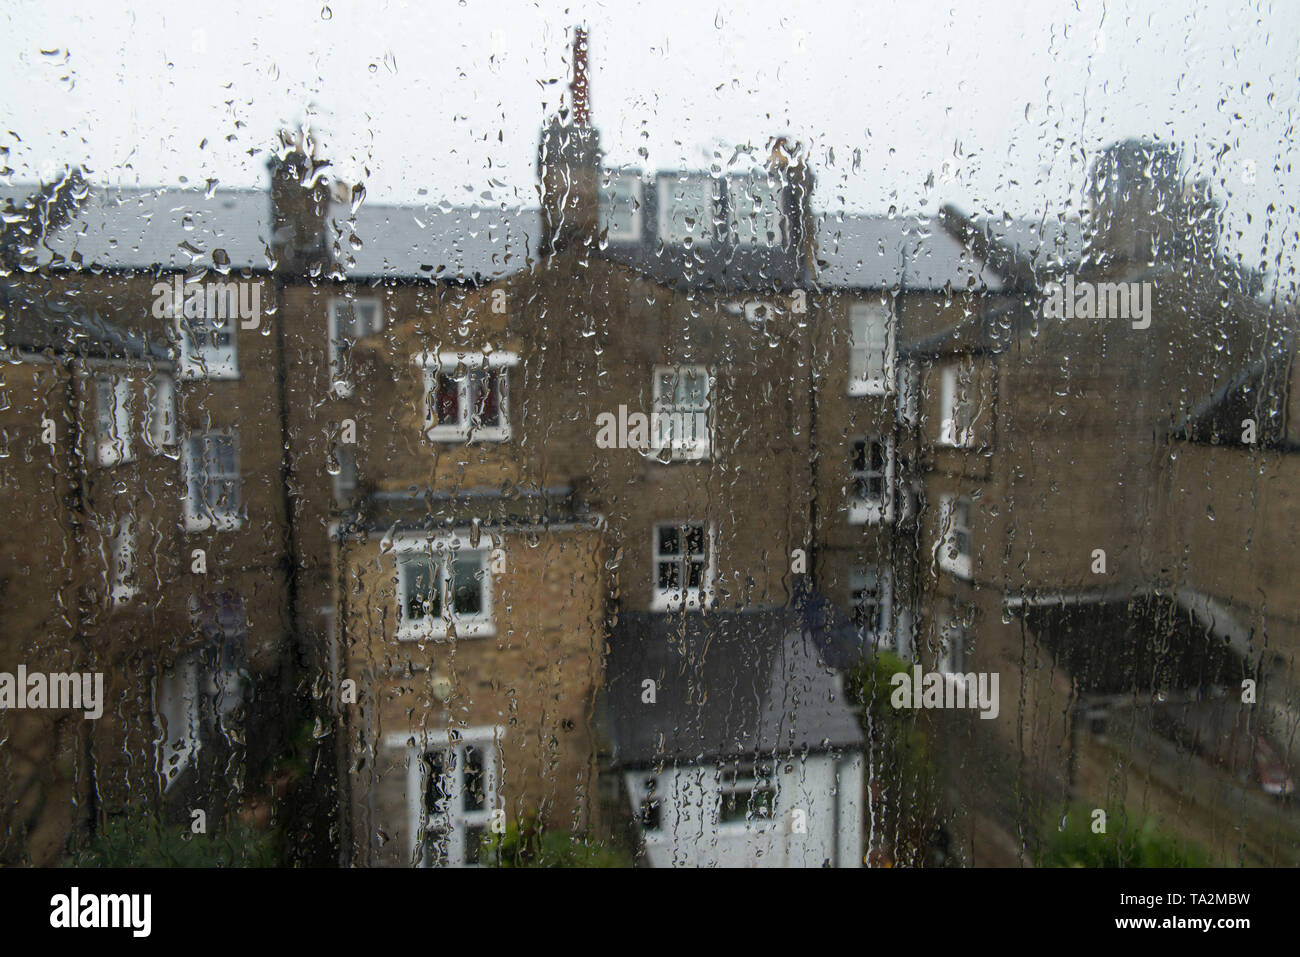 Edifici lungo i binari del treno a ovest di Londra visto da dietro un vetro ricoperto con pioggia, UK/ Regen auf der Fensterscheibe, Londra. Foto Stock